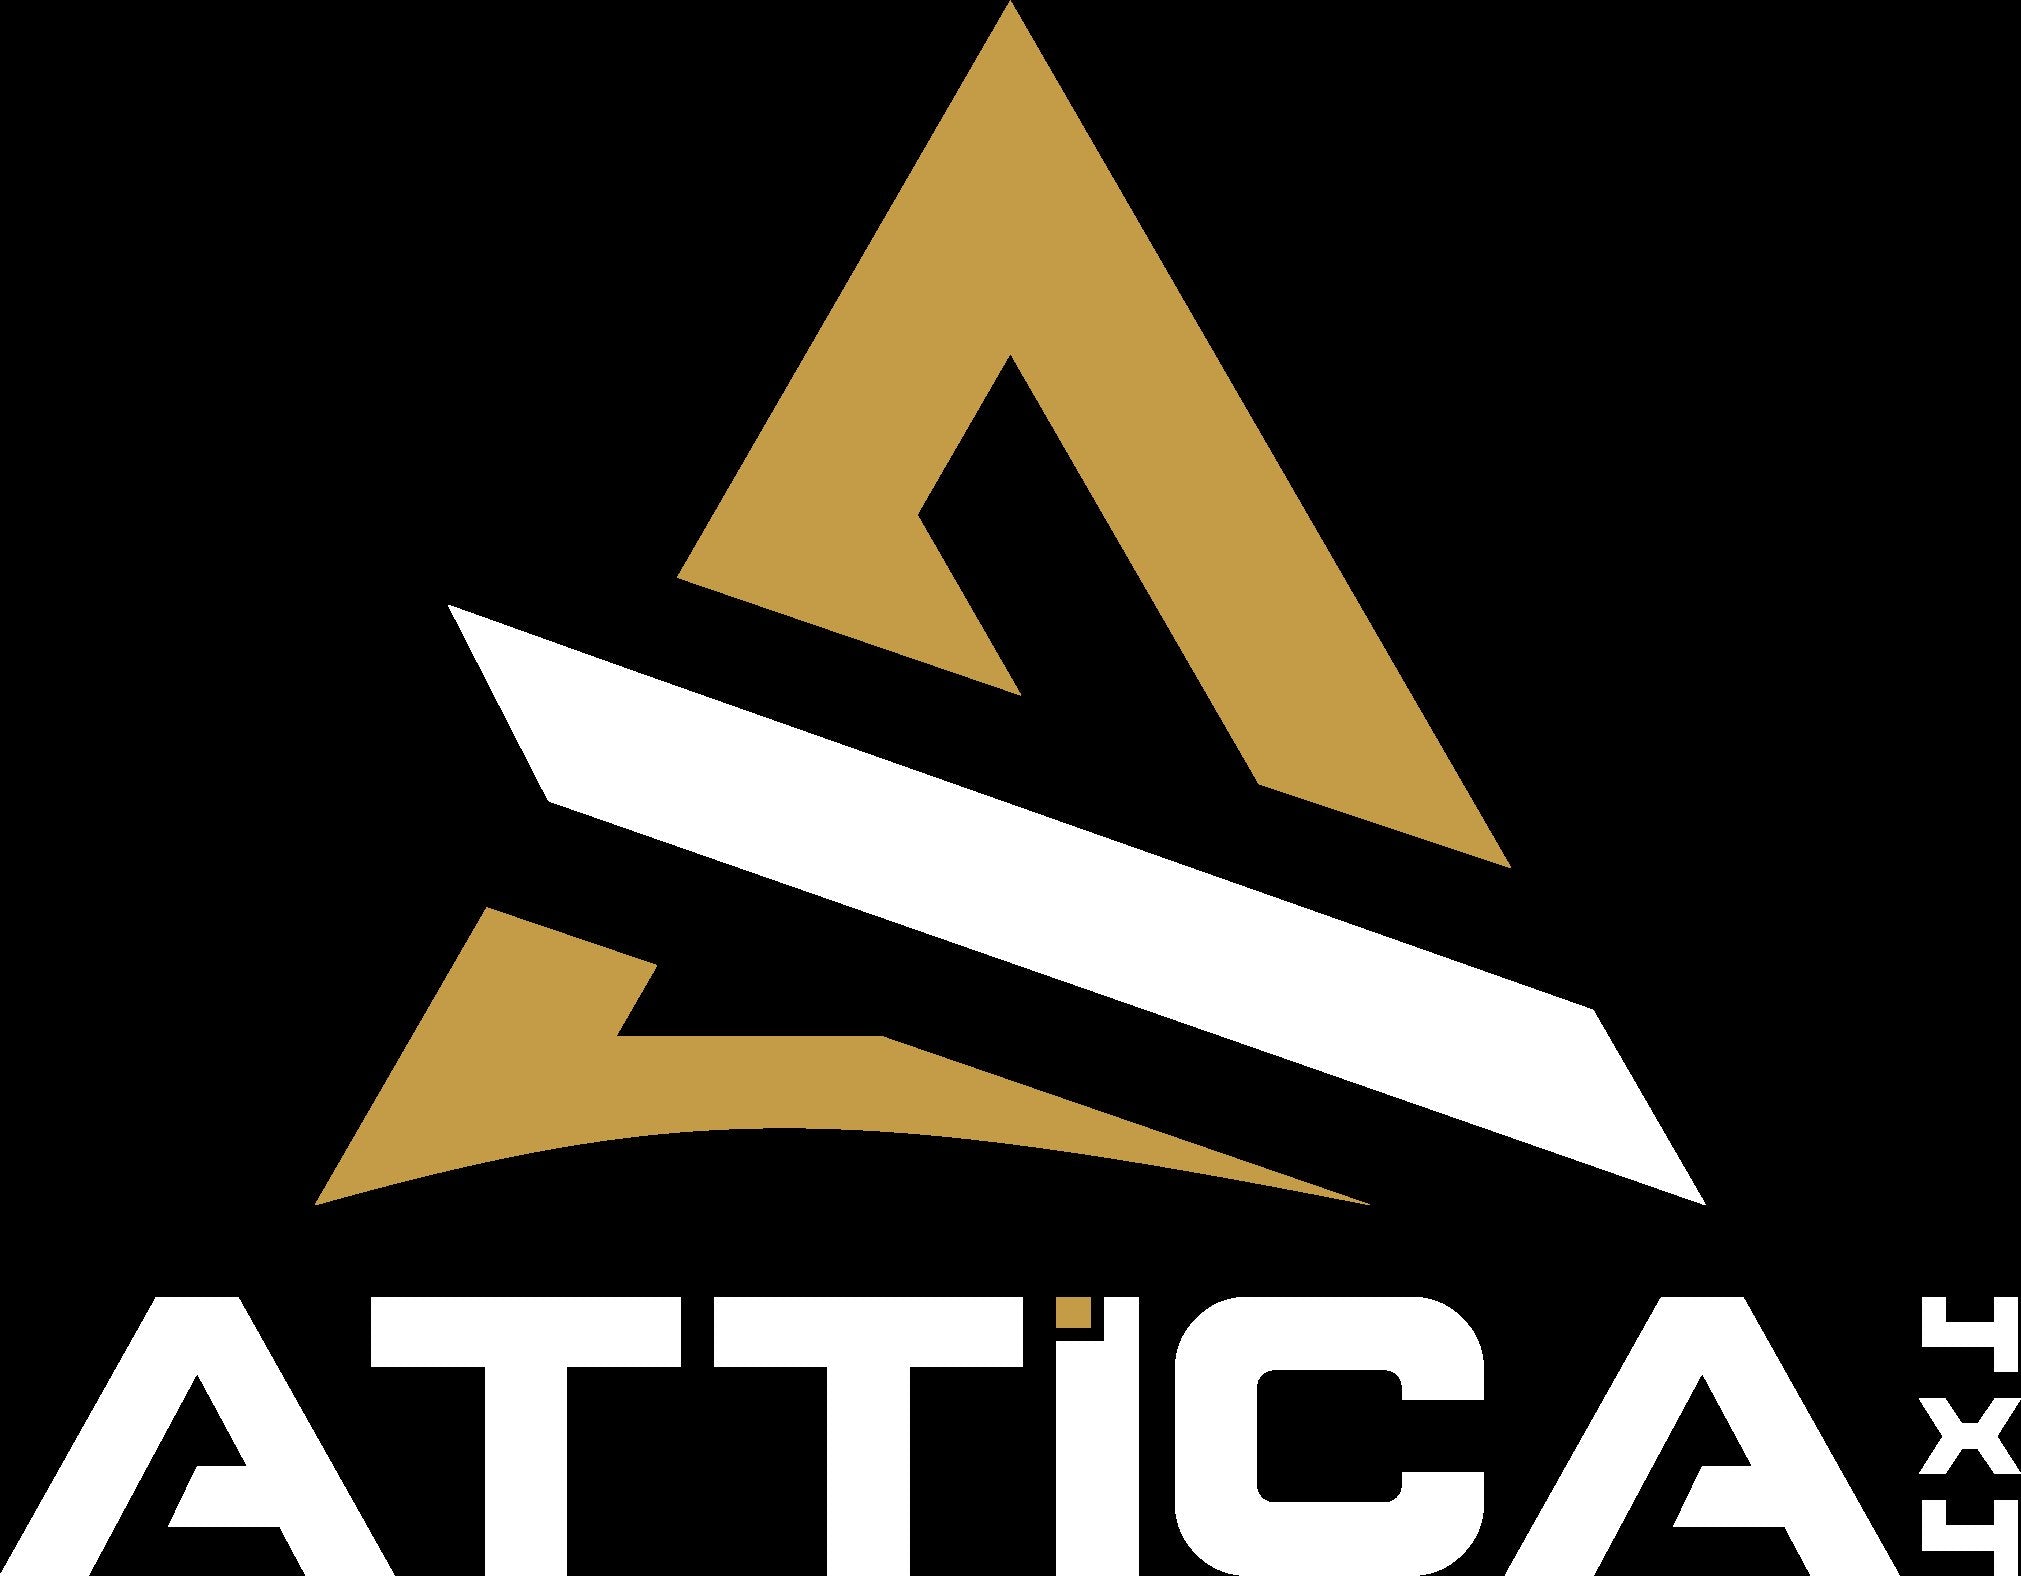 Attica 4x4